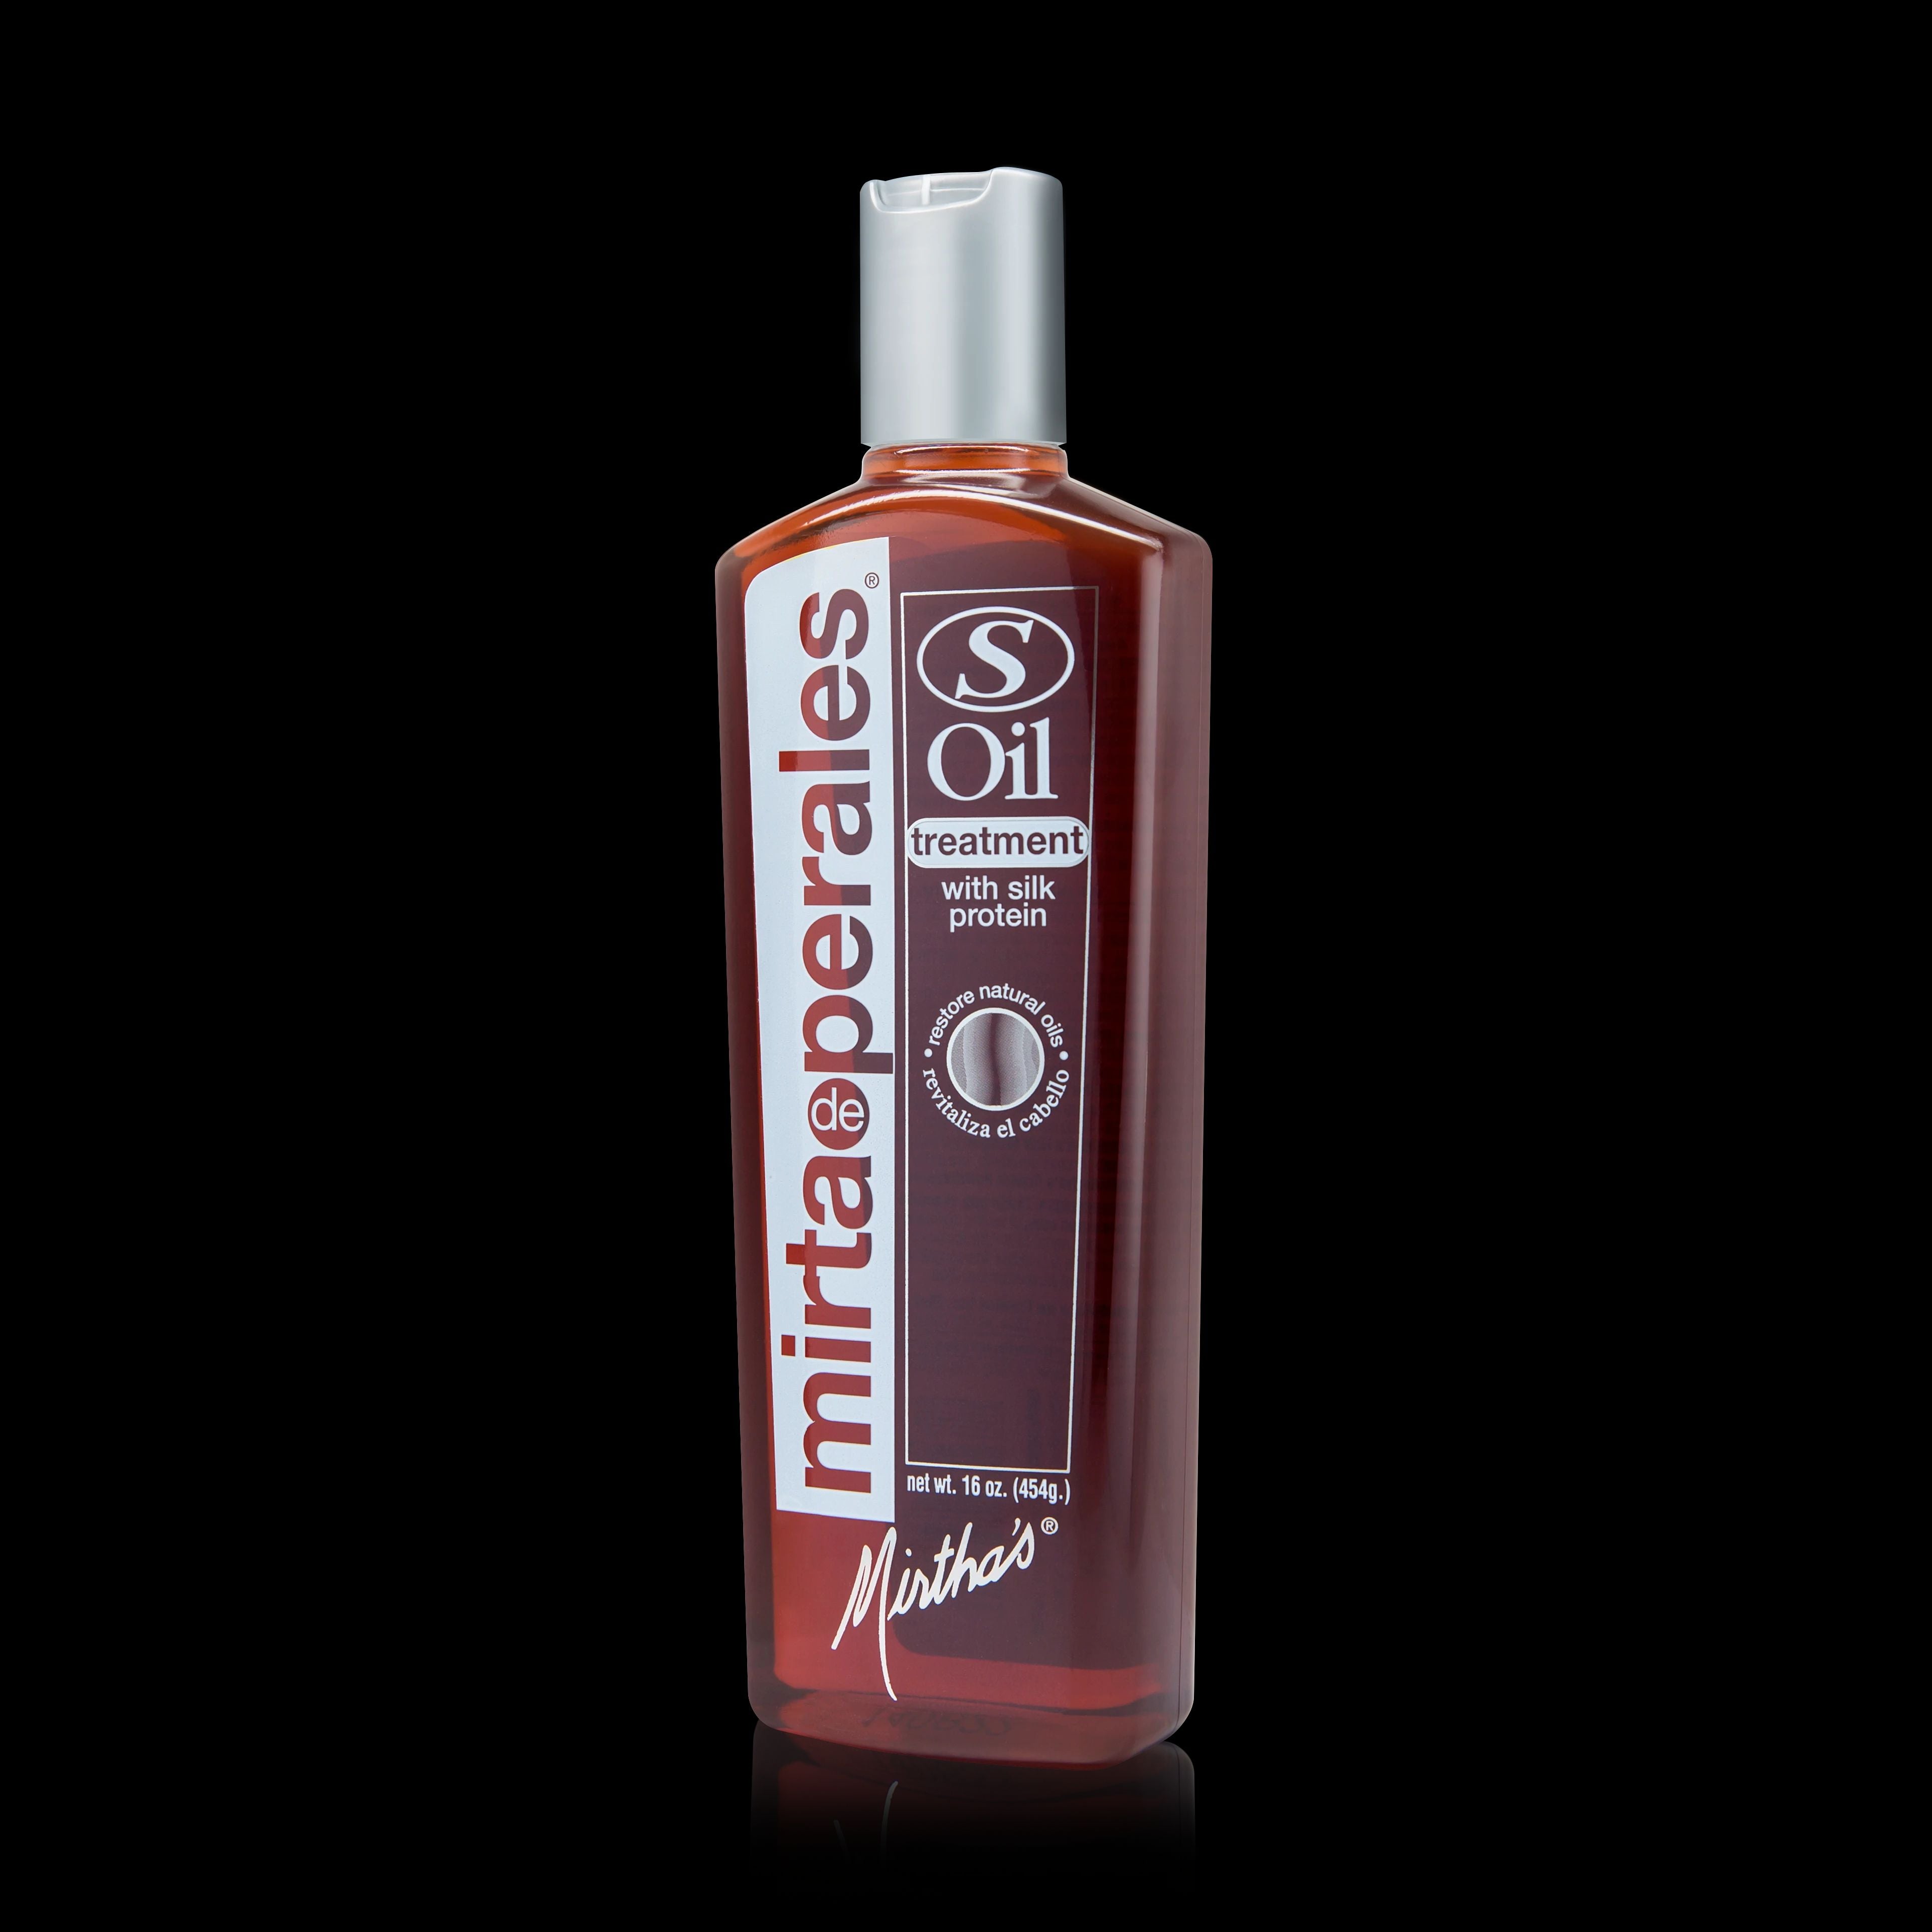 Mirta De Perales S Oil Treatment Shampoo For Dry Hair 8 Oz